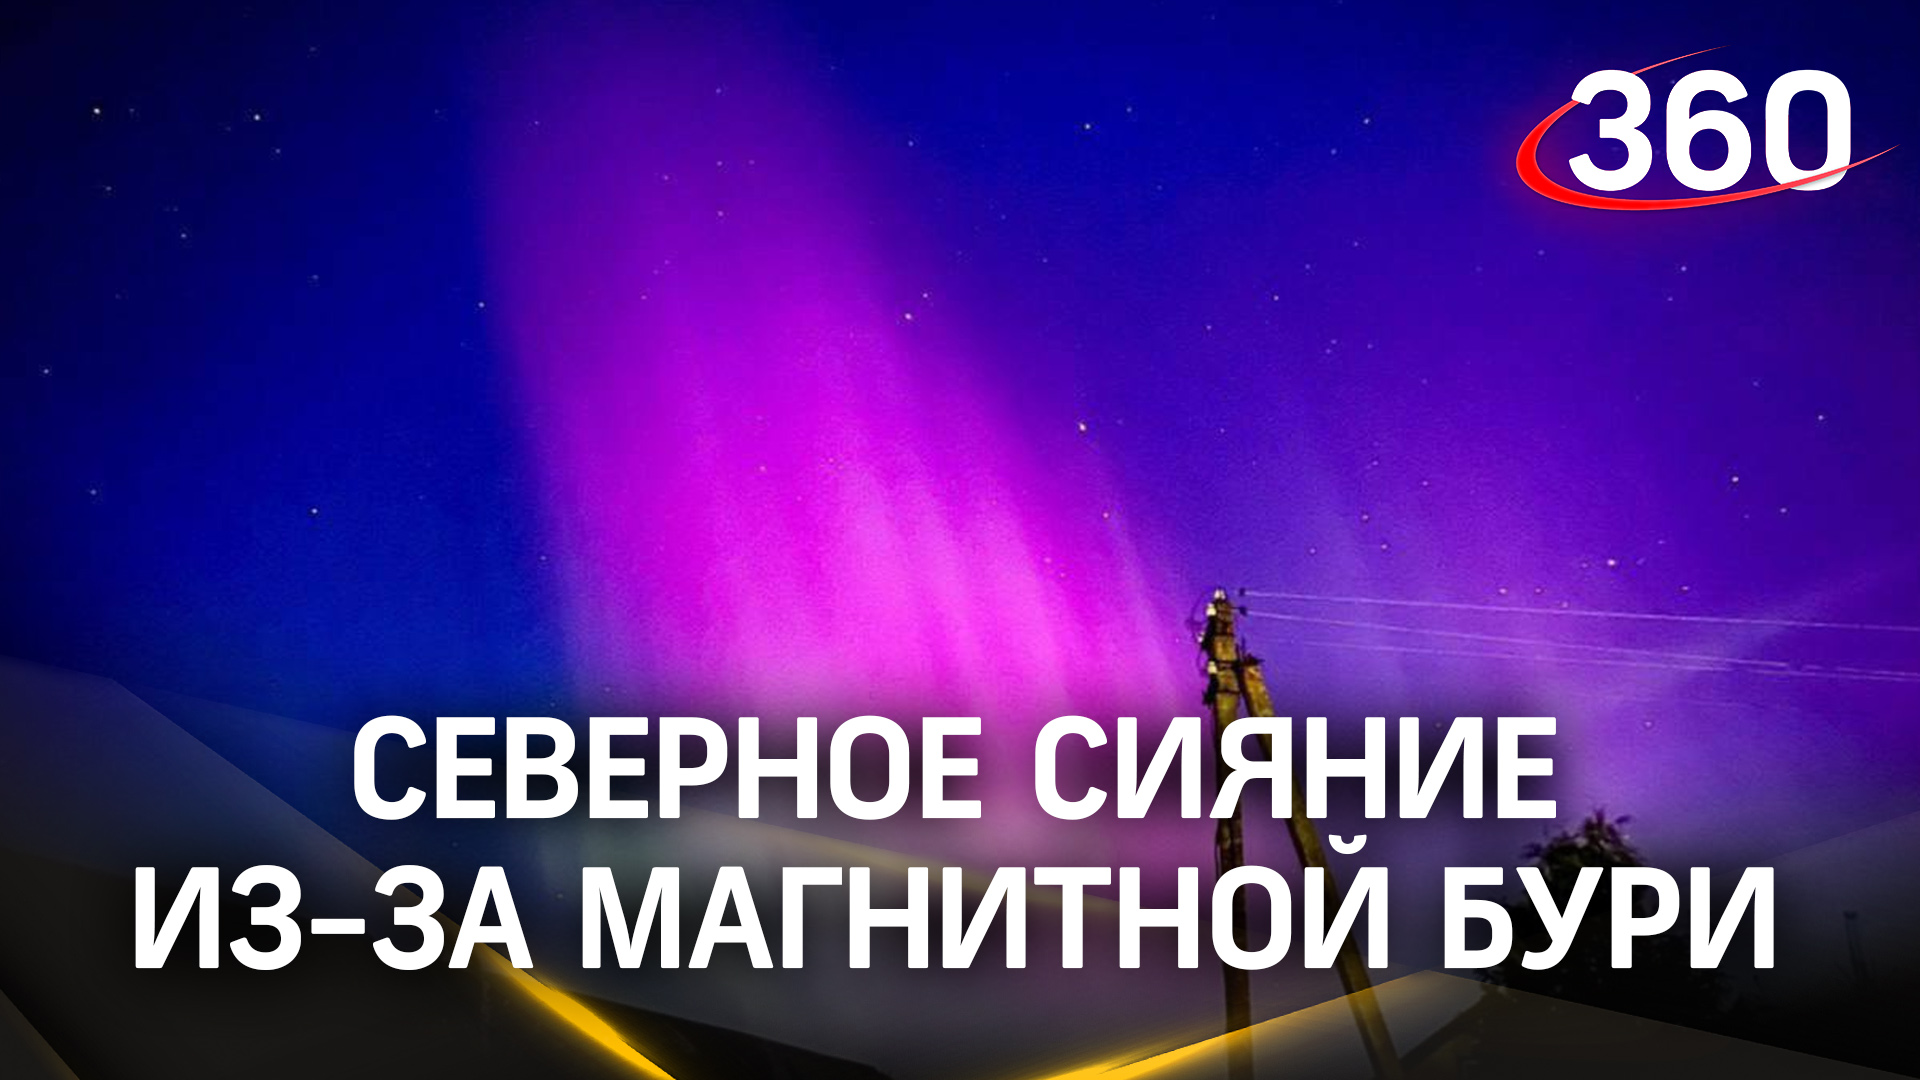 Палитра красок: жители российских городов делятся снимками северного сияния